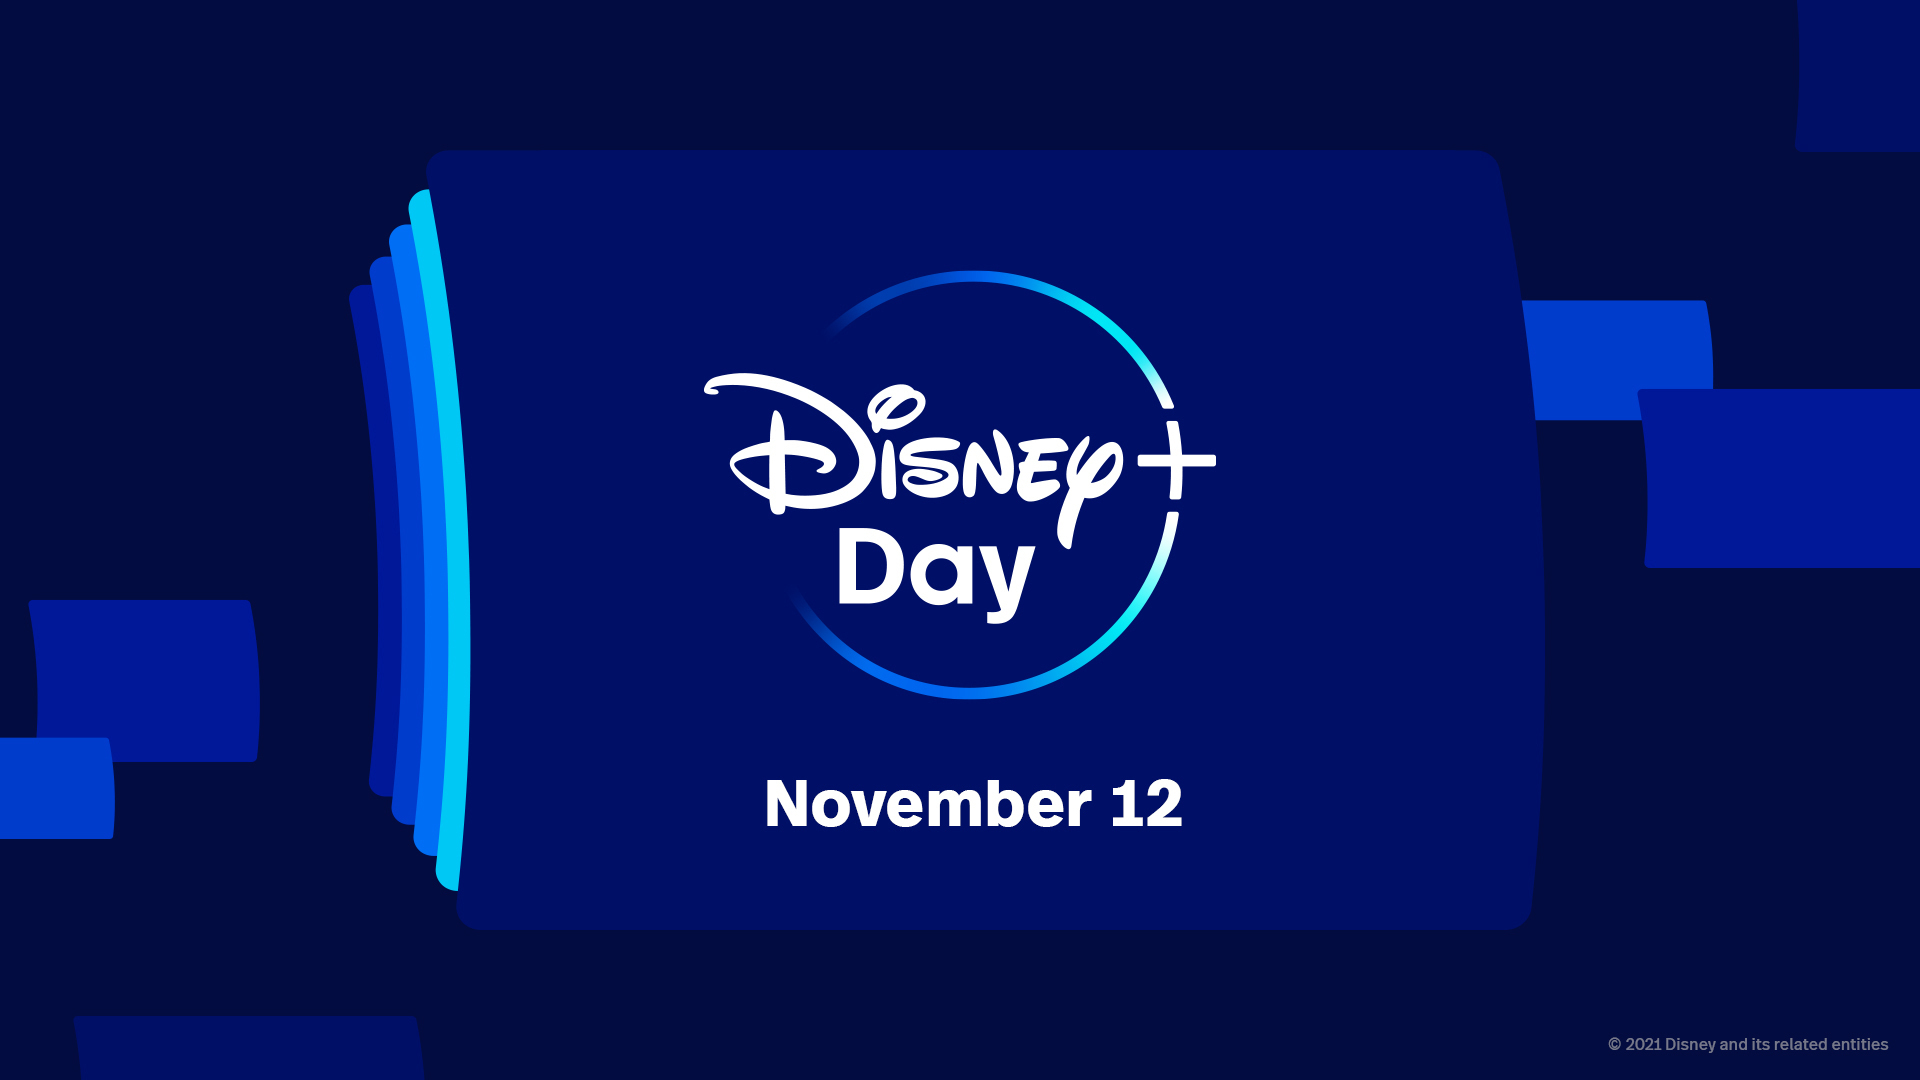 ฉลอง Disney+ Day พรีวิวออริจินัล ตัวอย่างหนัง จ่อคิวลงแพลตฟอร์มเร็ว ๆ นี้